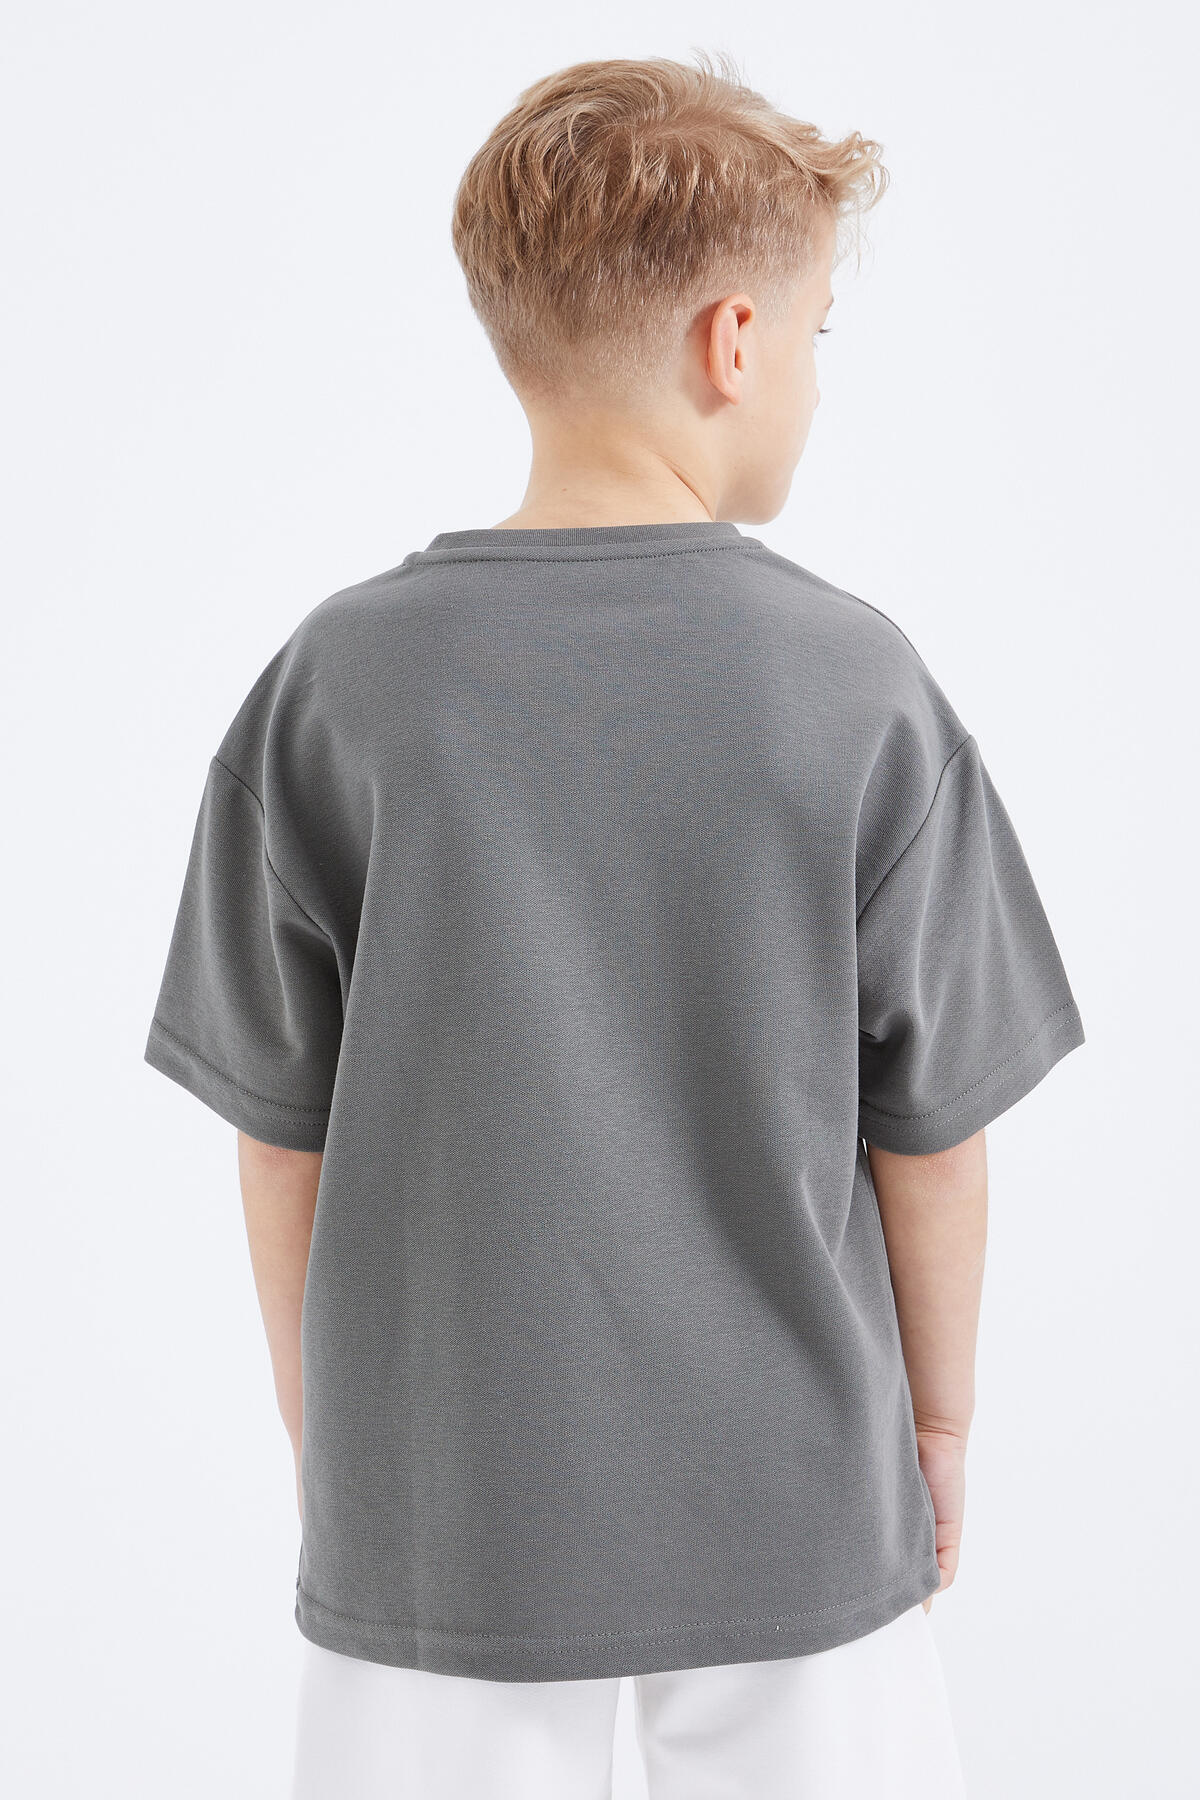 Çağla Baskılı Kısa Kollu O Yaka Erkek Çocuk T-Shirt - 10912